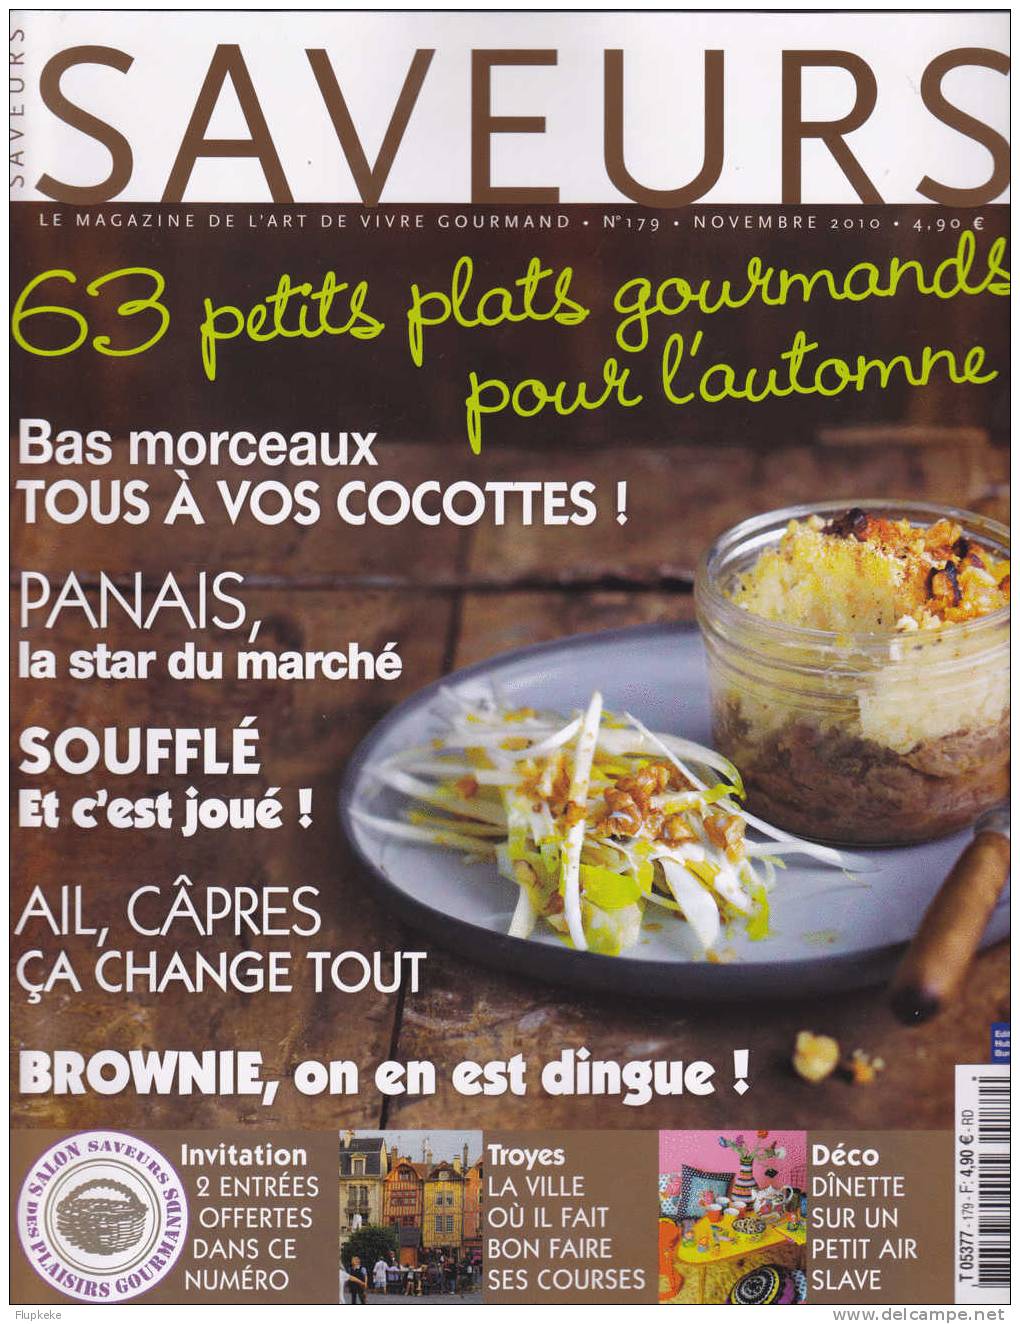 Saveurs 179 Novembre 2010 Panais La Star Du Marché Soufflé Ail Câpres Brownie Troyes - Culinaria & Vinos